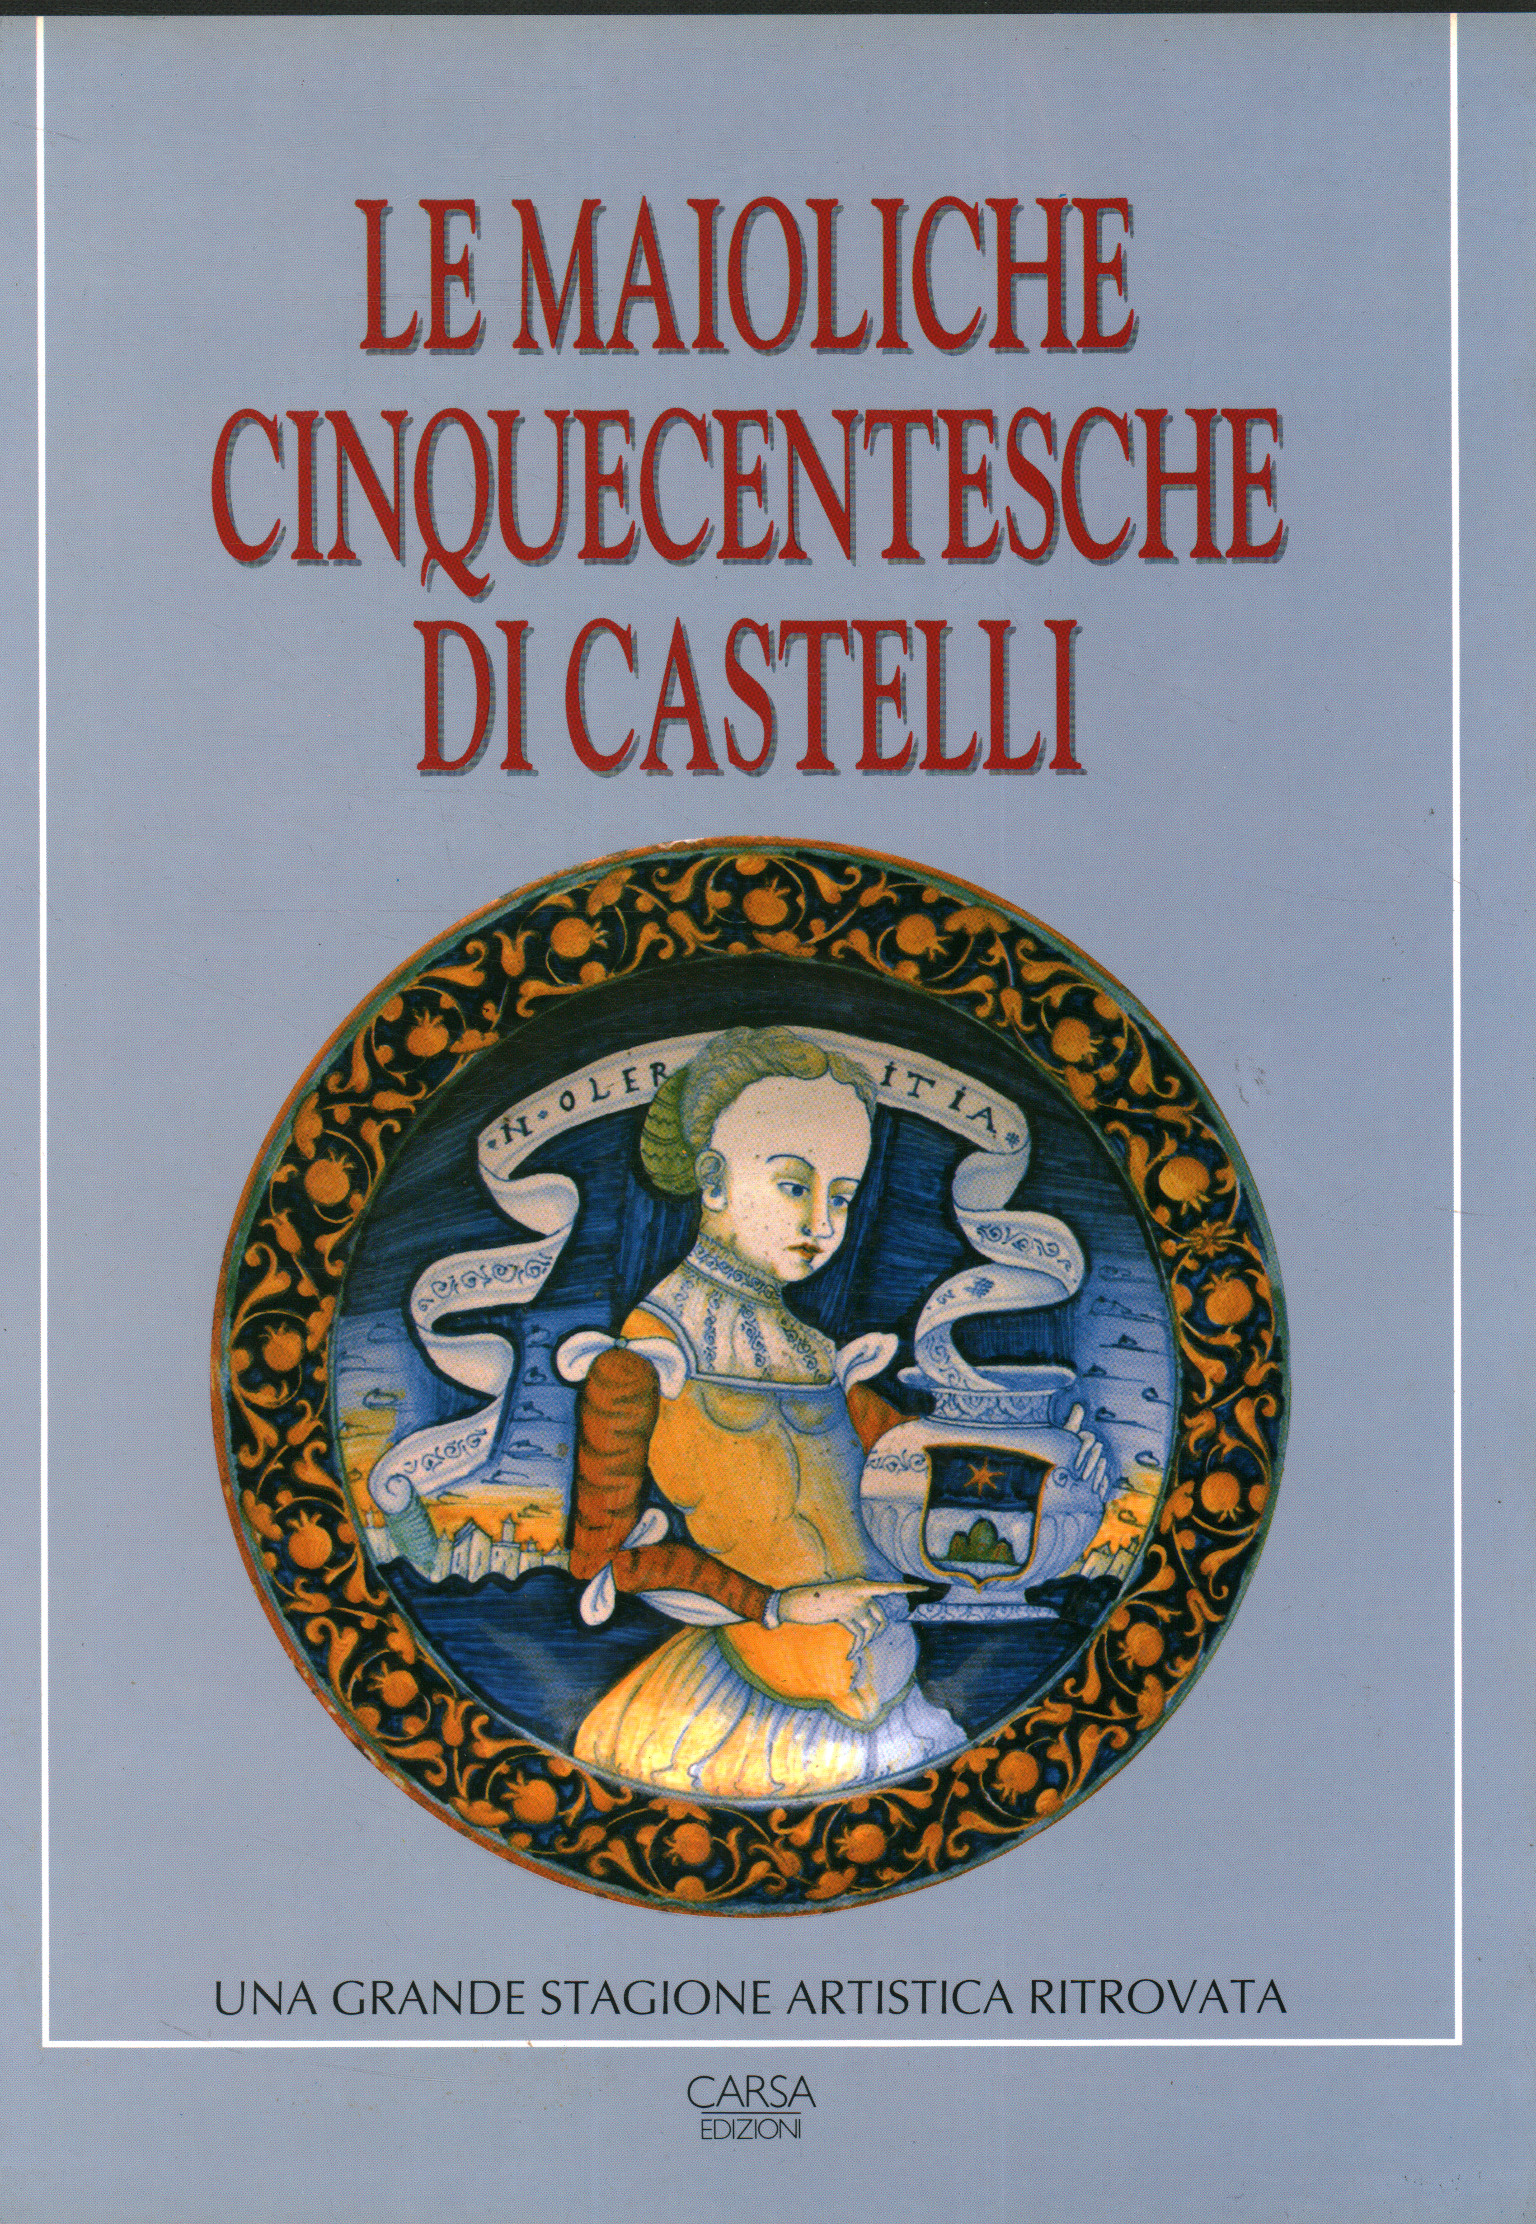 La majolique du XVIe siècle de Castelli